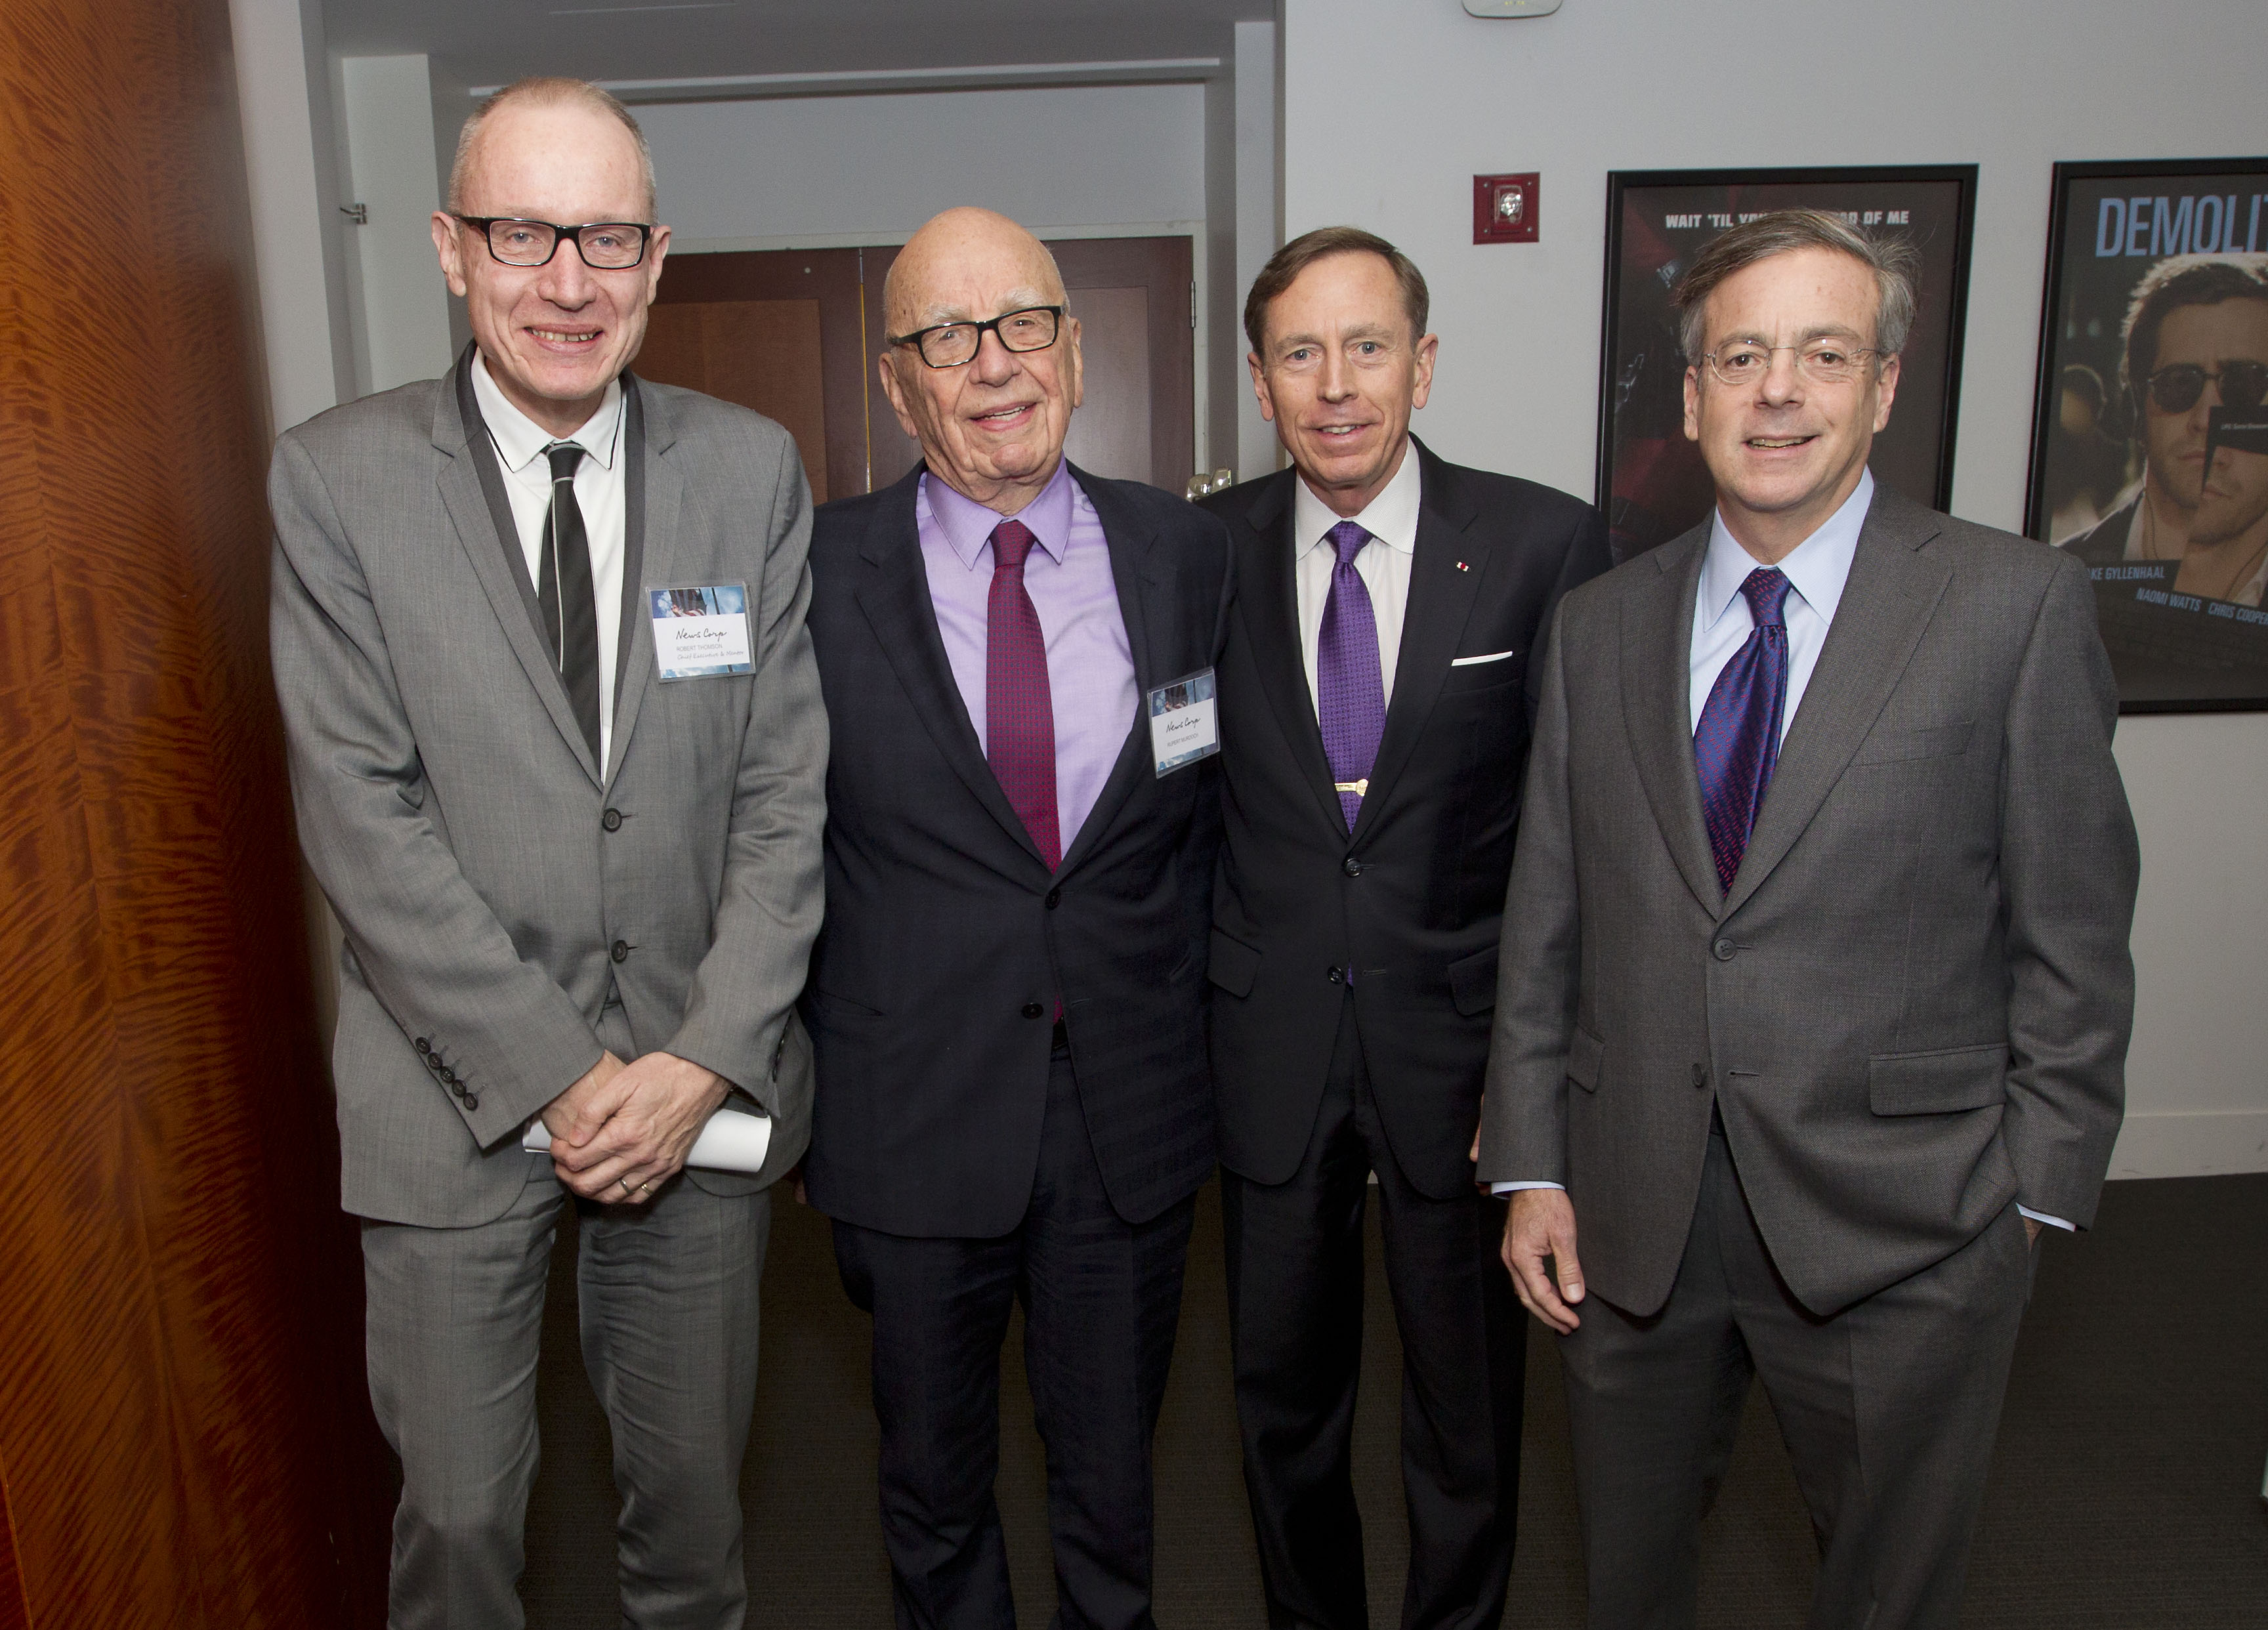 Robert Thomson, Sidney E. Goodfriend, Rupert Murdoch, General (Ret) David H. Petraeus